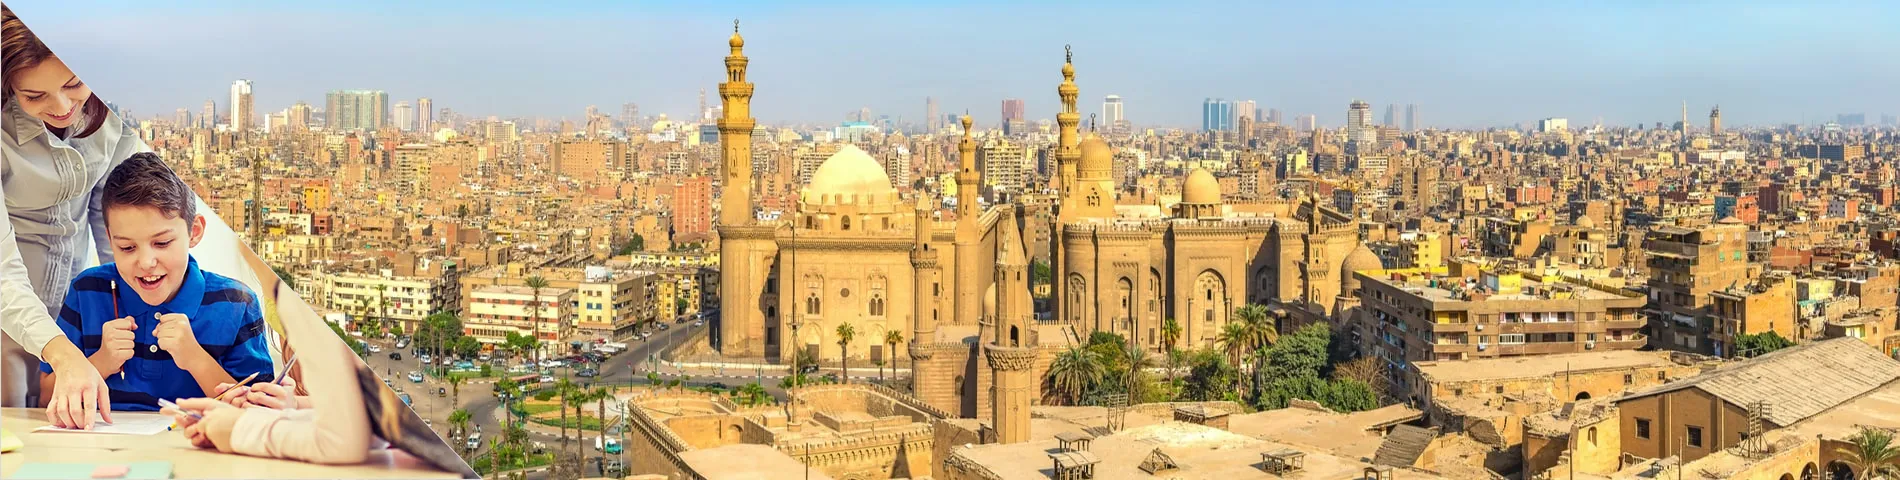 Kairo - Arabia opettajille